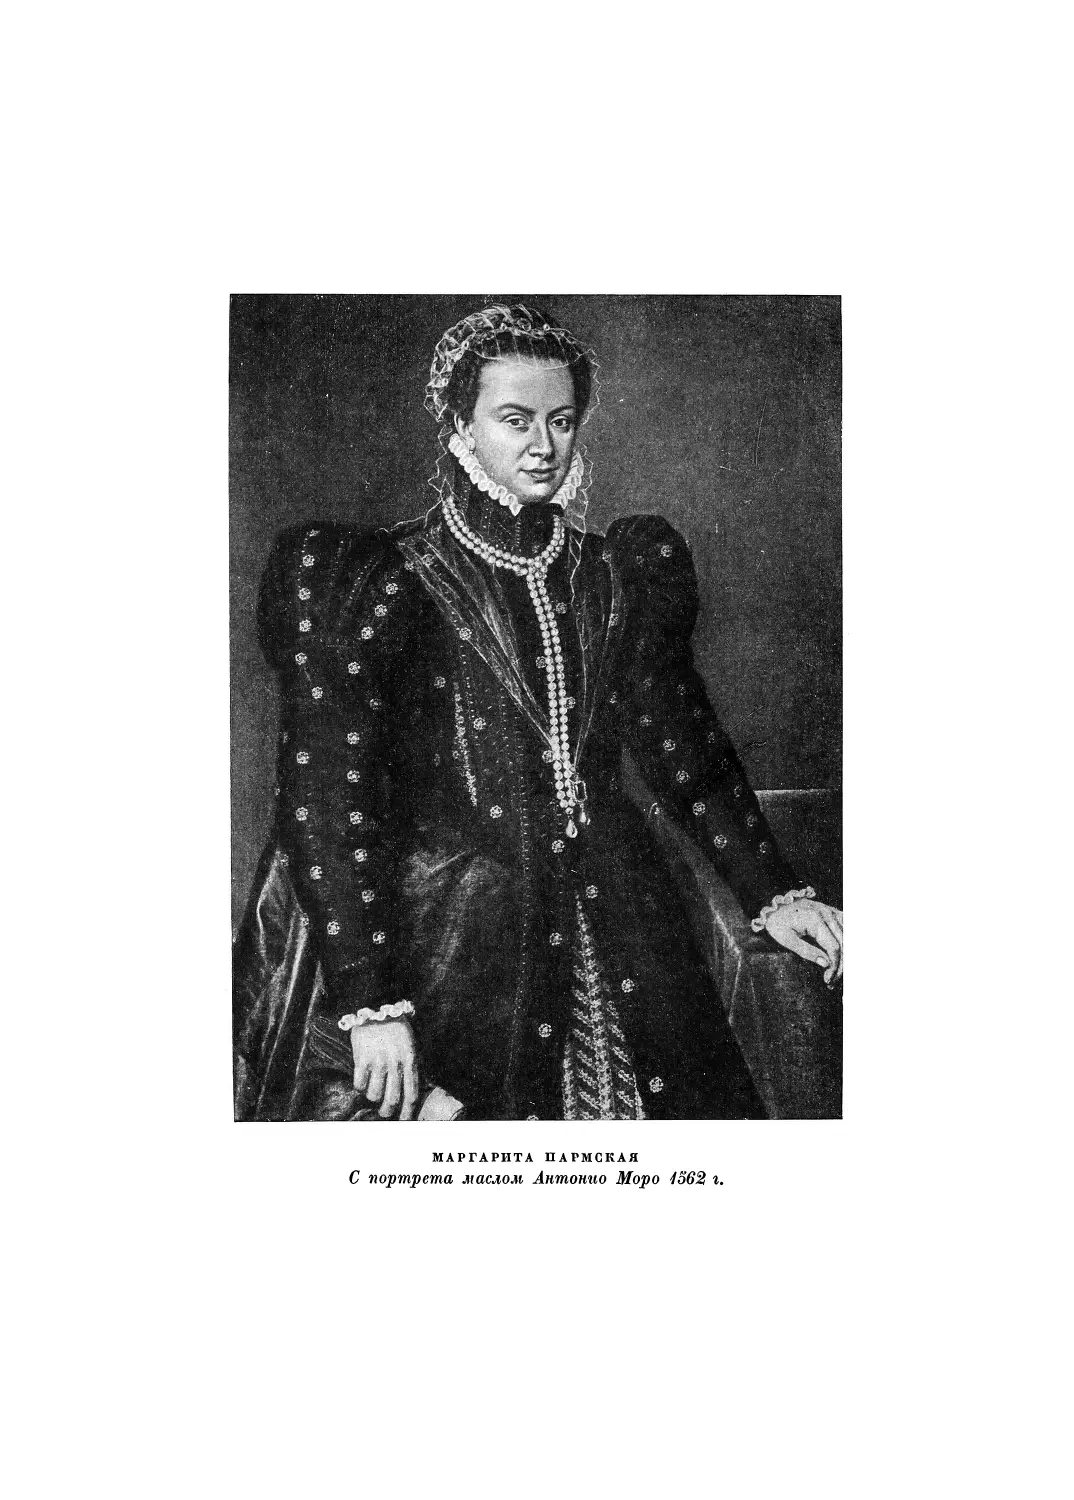 Вклейка. Маргарита Пармская. — С портрета маслом Антонио Моро 1562 г.